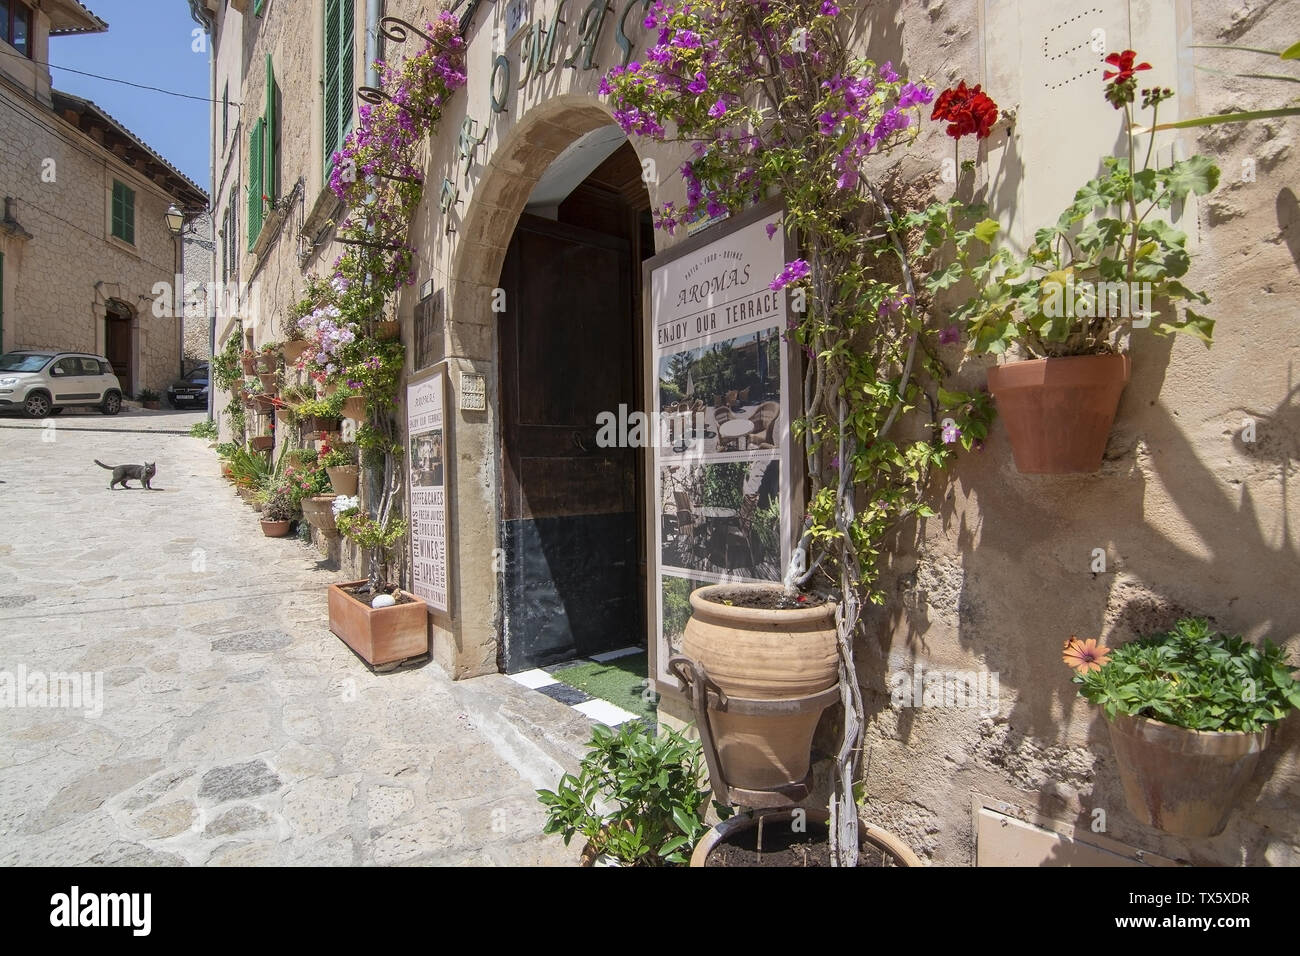 VALLDEMOSSA, Mallorca, España - 20 de junio, 2019: Flor fachada decorada en la pintoresca aldea en un soleado día de junio 20, 2019 en Valldemossa, España. Foto de stock